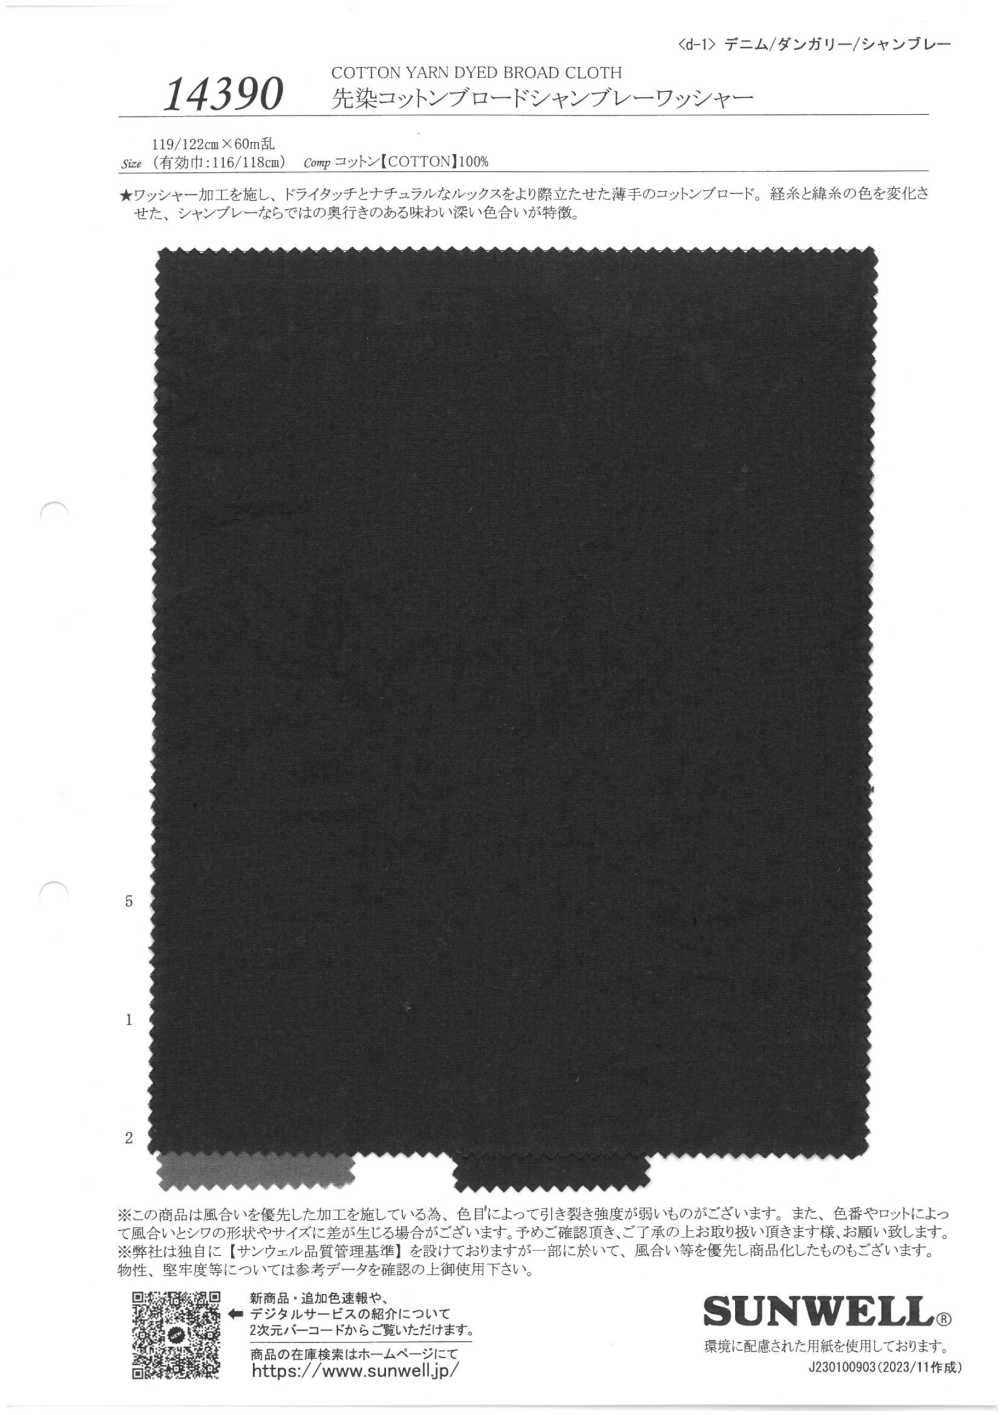 14390 Traitement De La Rondelle Chambray En Coton Drap Teint En Fil[Fabrication De Textile] SUNWELL